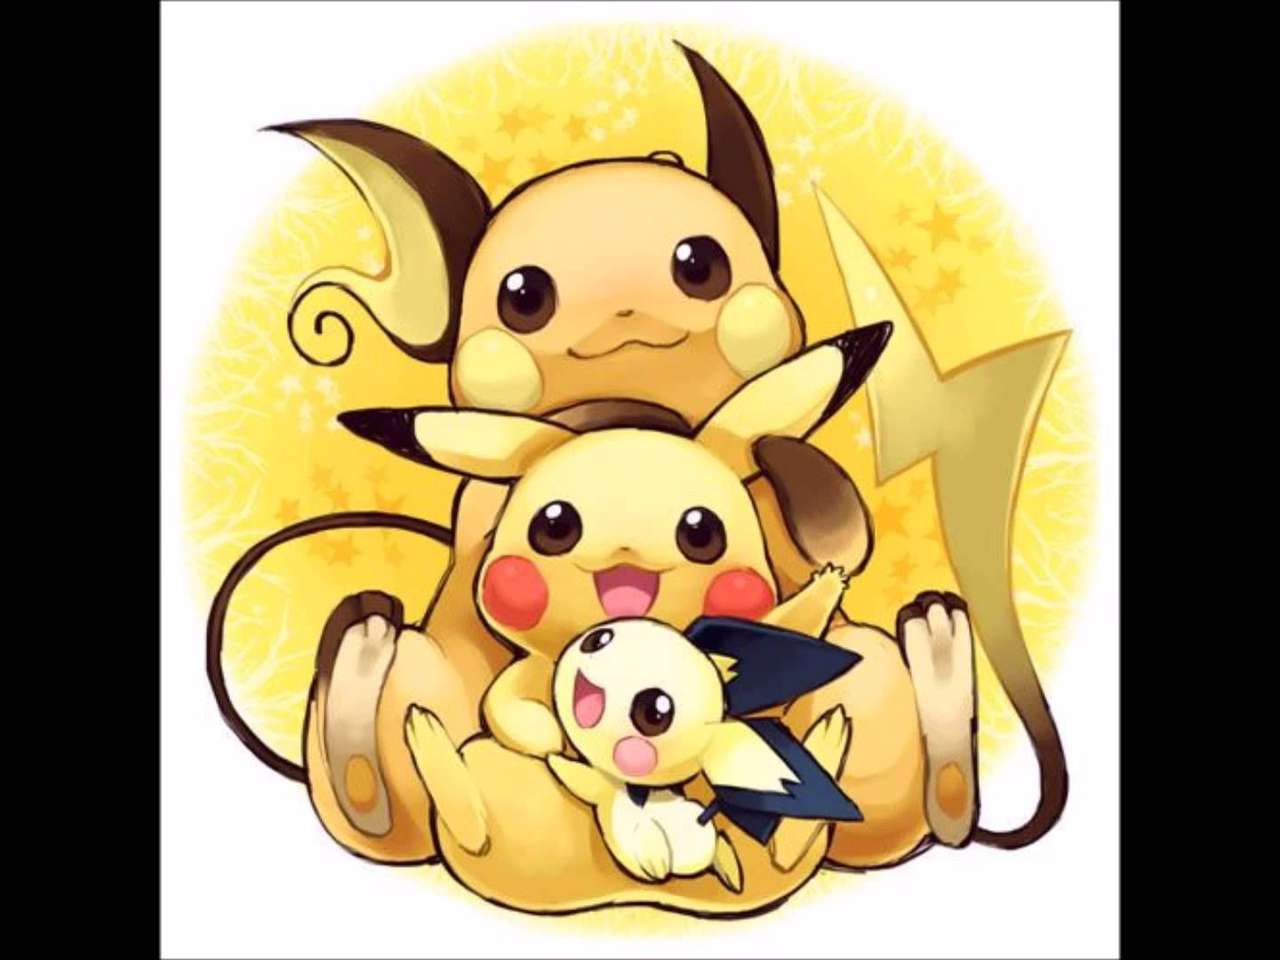 Pichu, Pikachu and Raichu online puzzle